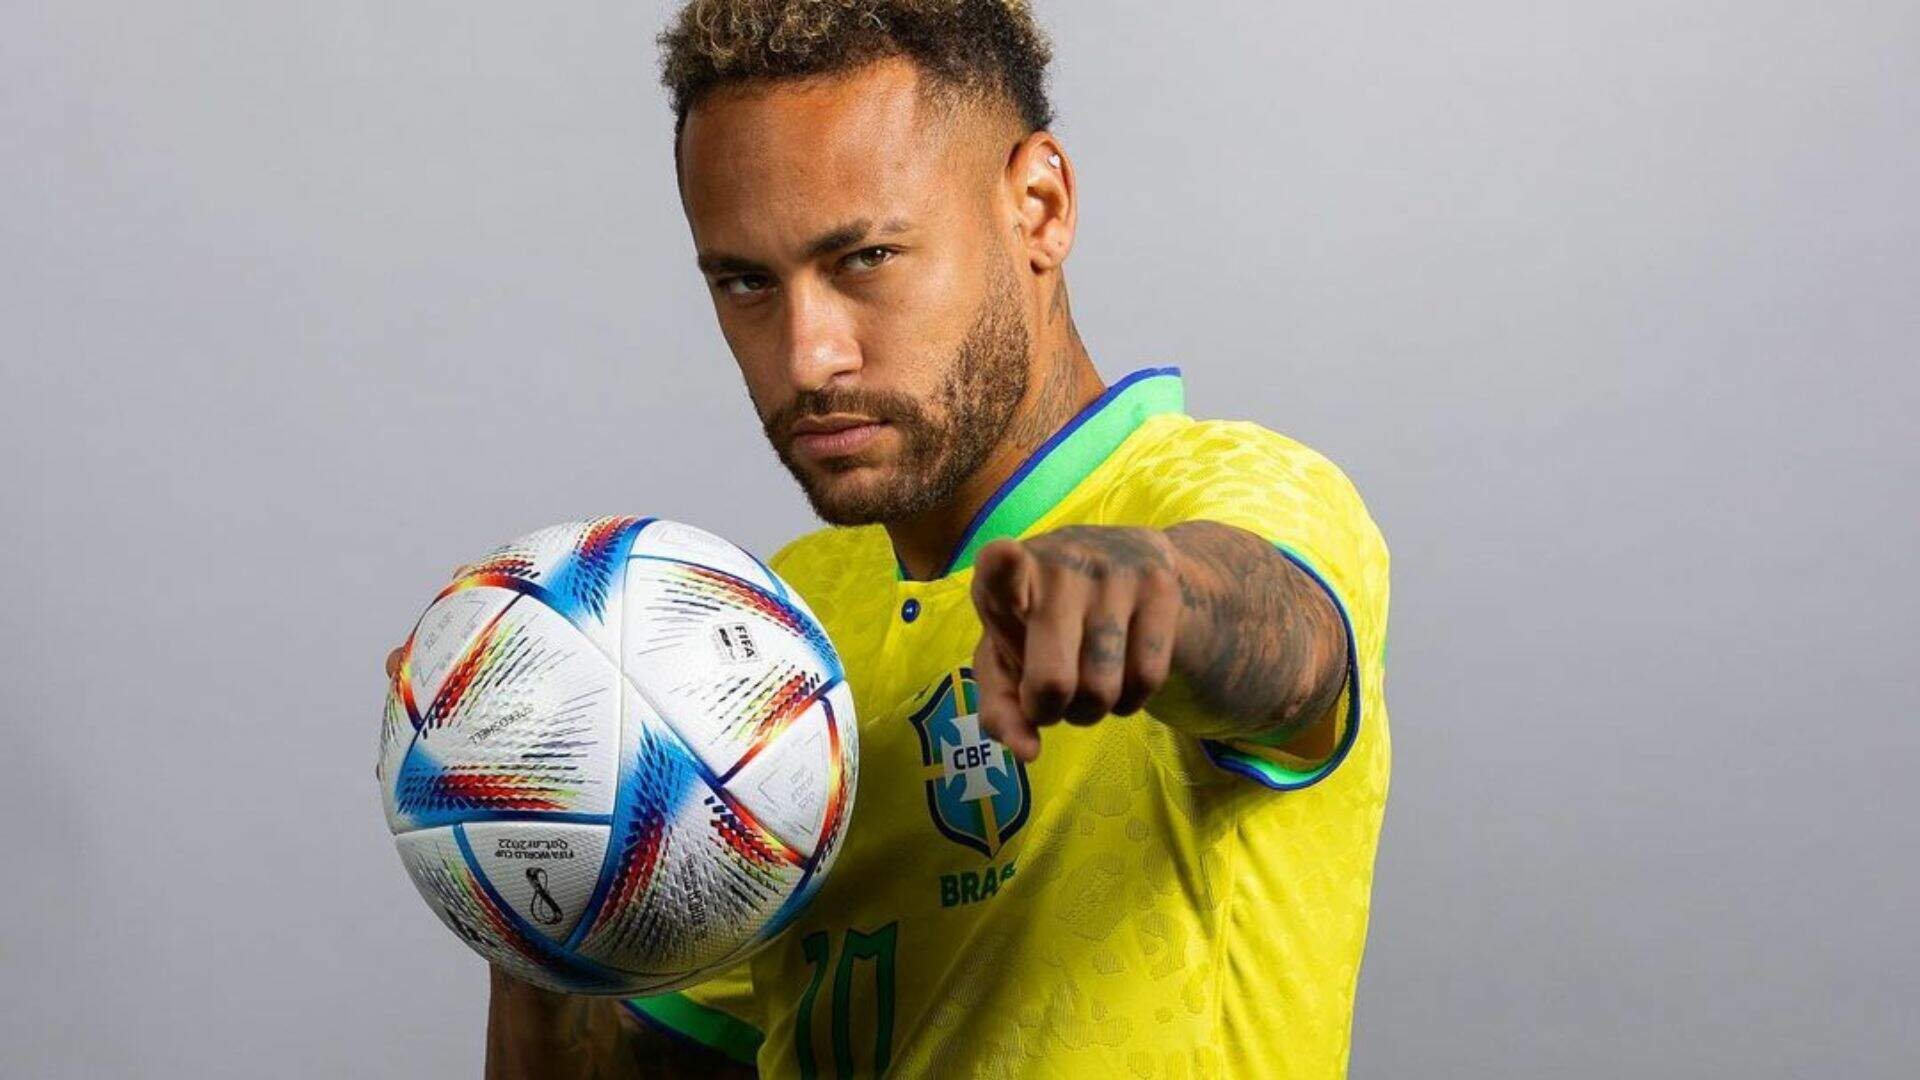 Tite confirma participação de Neymar Jr. na próxima partida do Brasil: “Estando bem, vai pro jogo” - Metropolitana FM